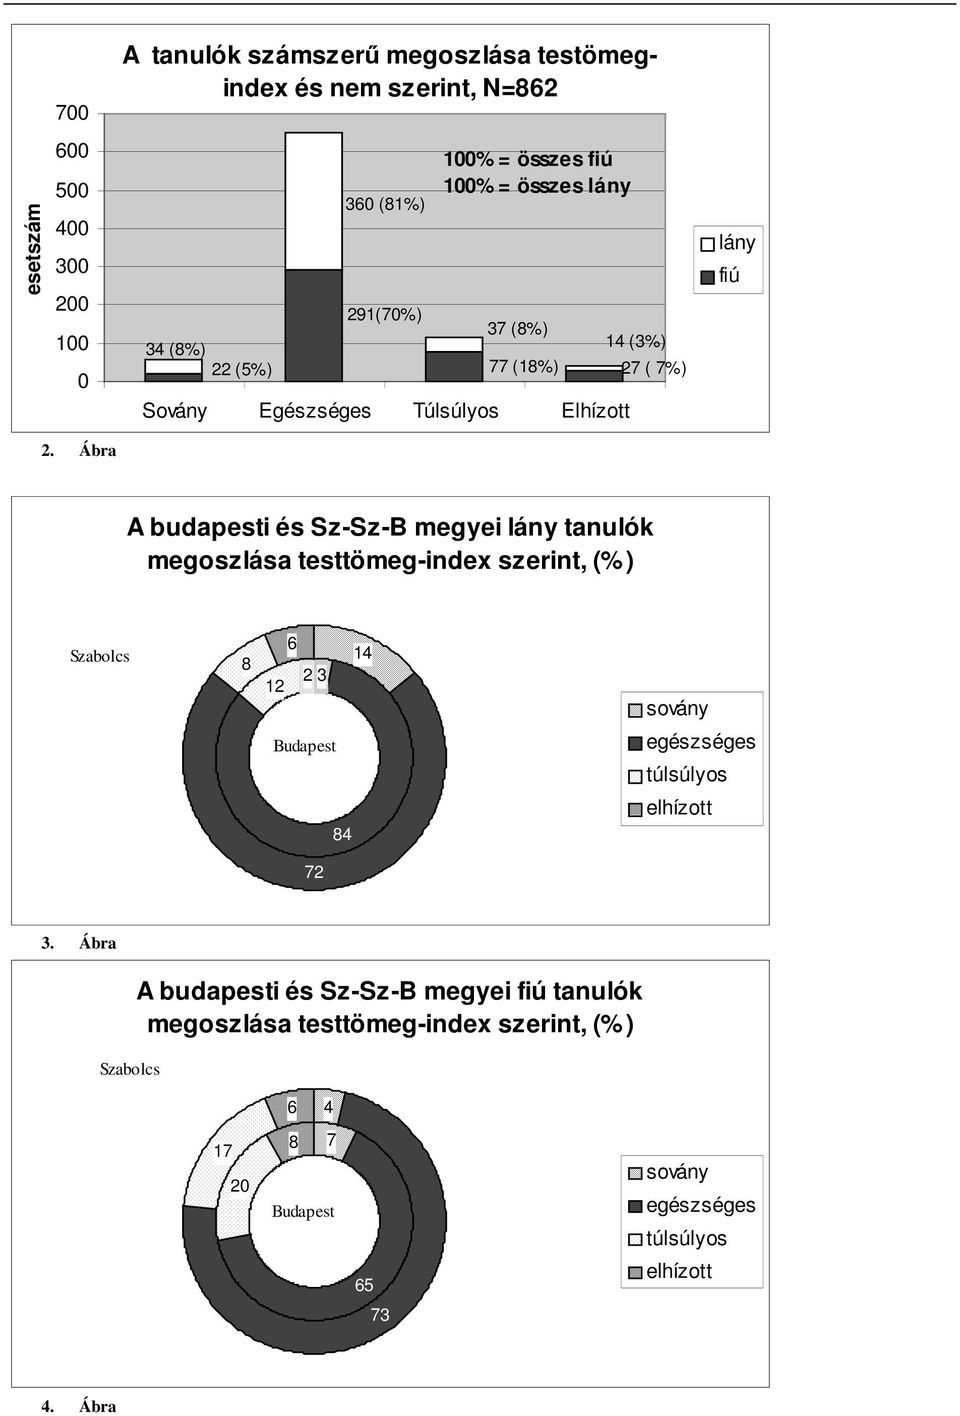 Ábra A budapesti és Sz-Sz-B megyei tanulók megoszlása testtömeg-index szerint, (%) Szabolcs 8 6 12 2 3 14 sovány Budapest egészséges